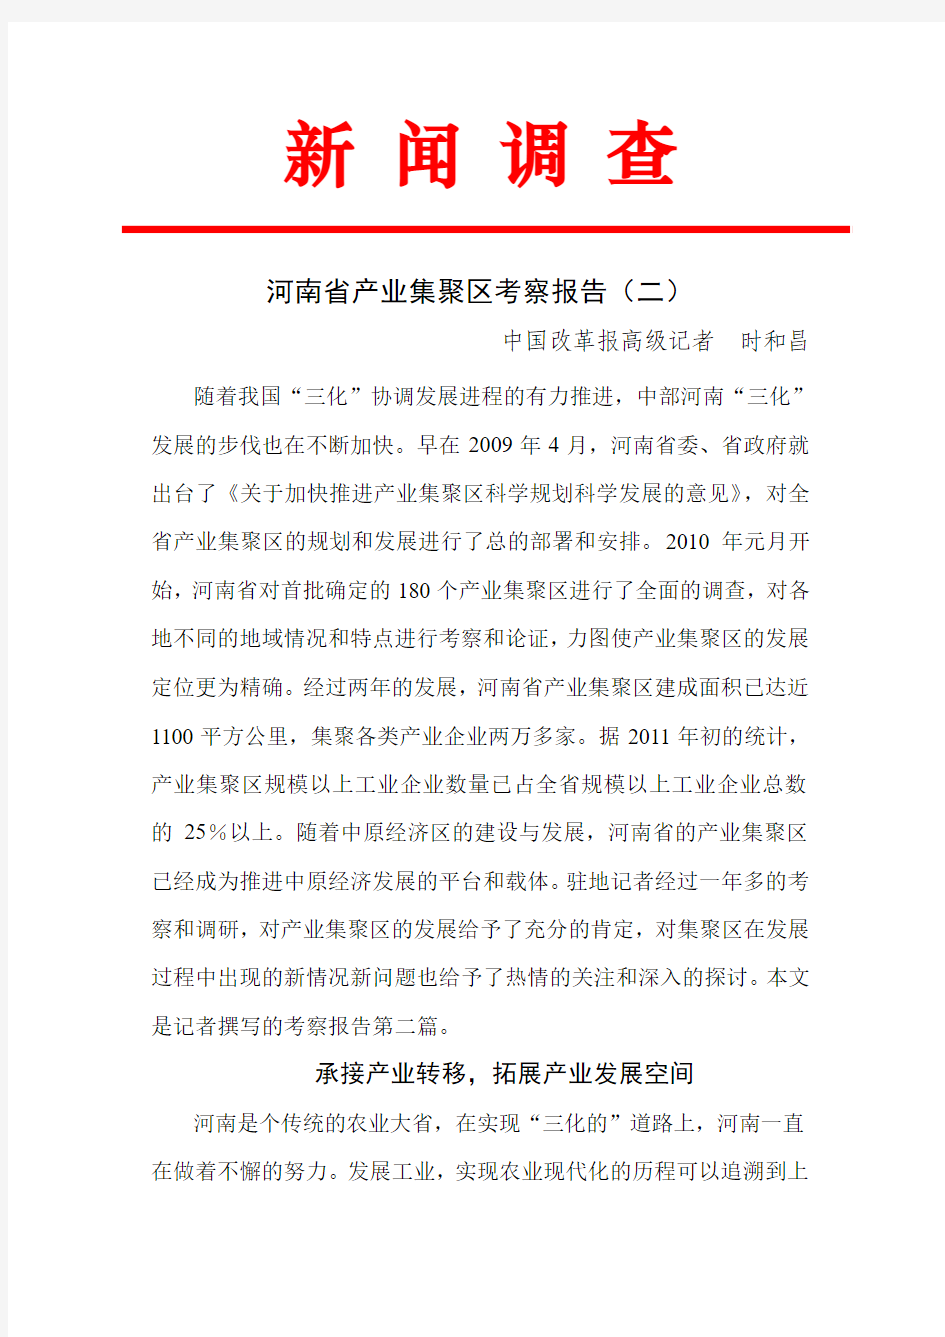 河南省产业集聚区考案报告之二(1)